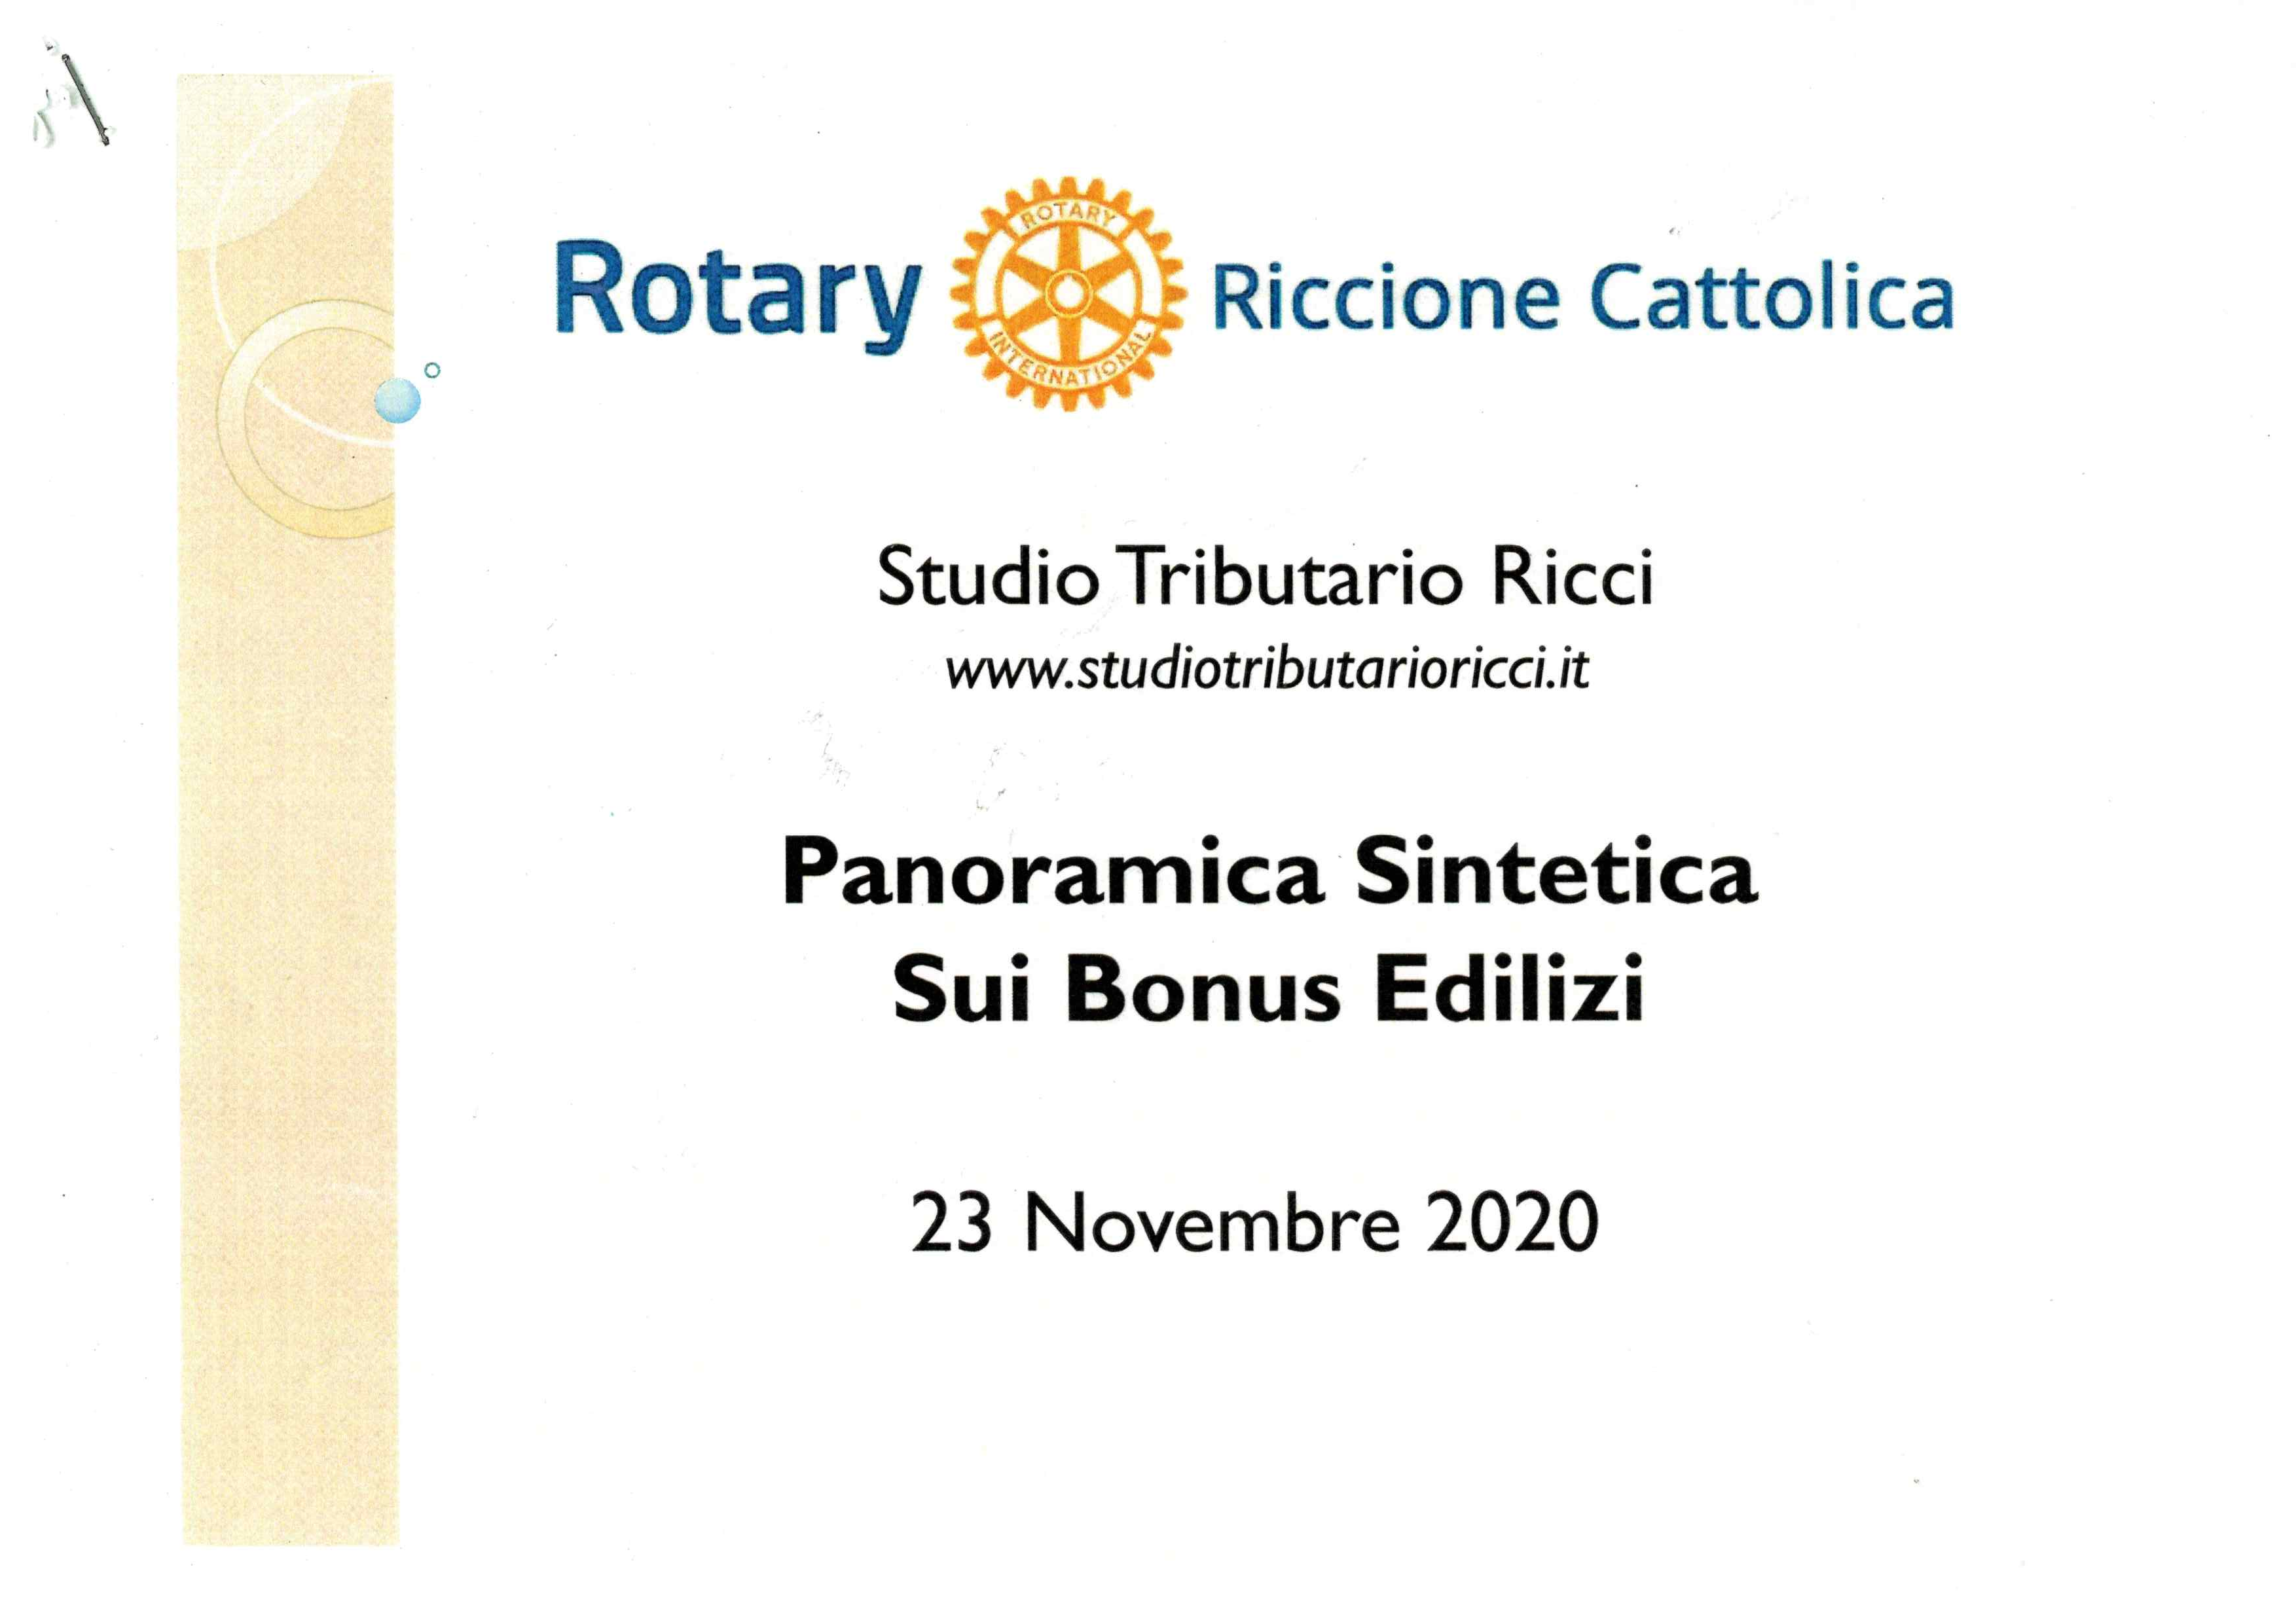 Intervento Rotary Club Riccione-Cattolica 23.11.2020 - Panoramica sintetica sui bonus edilizi